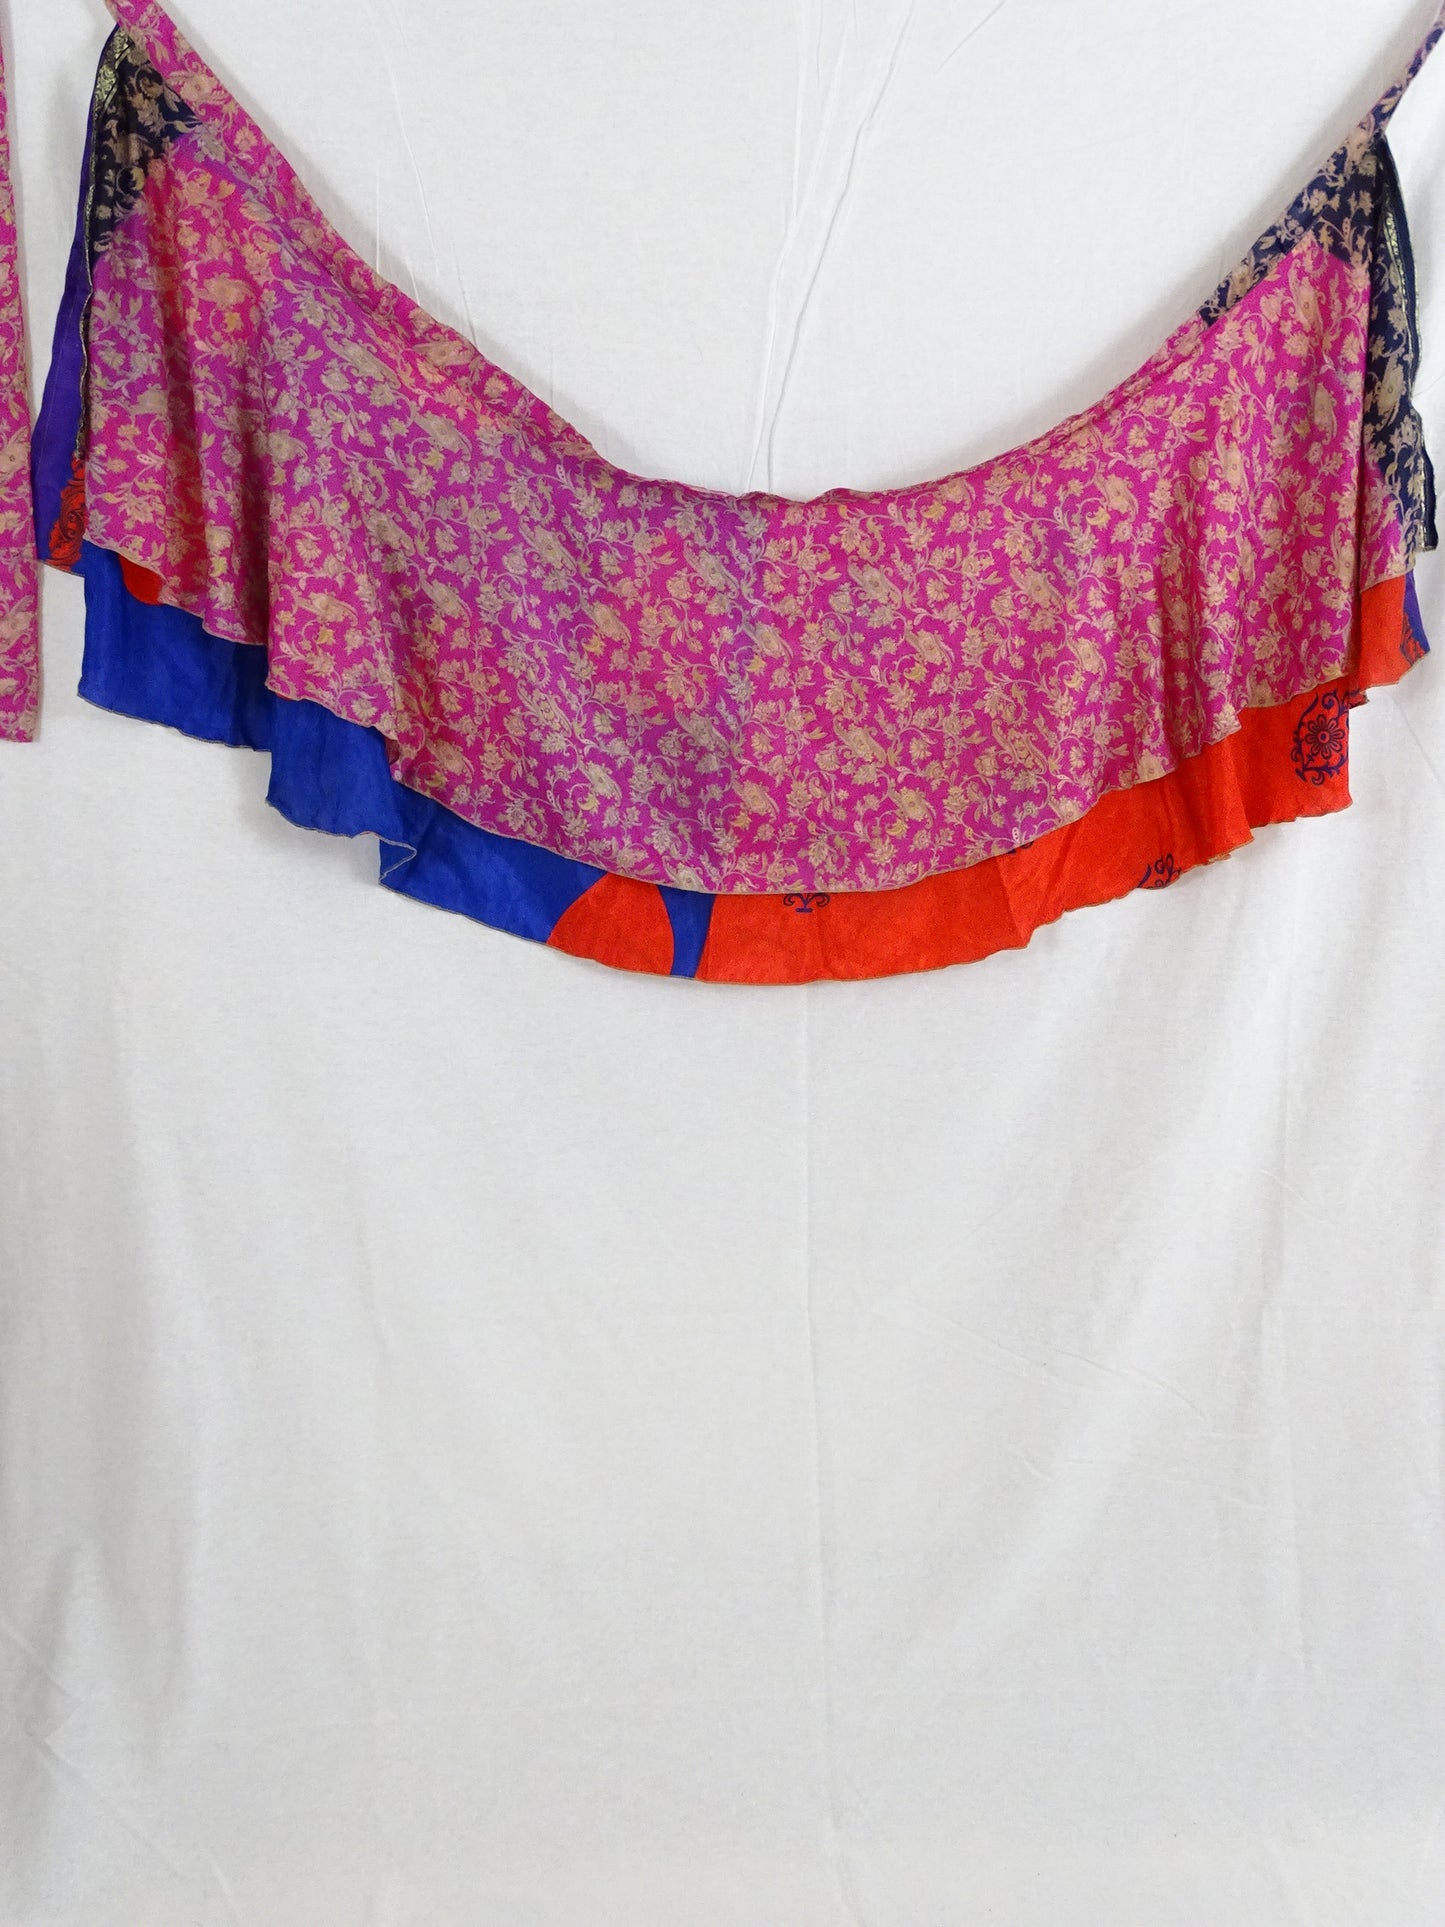 Hot and Cold Mini Sari Wrap Skirt - XL Size